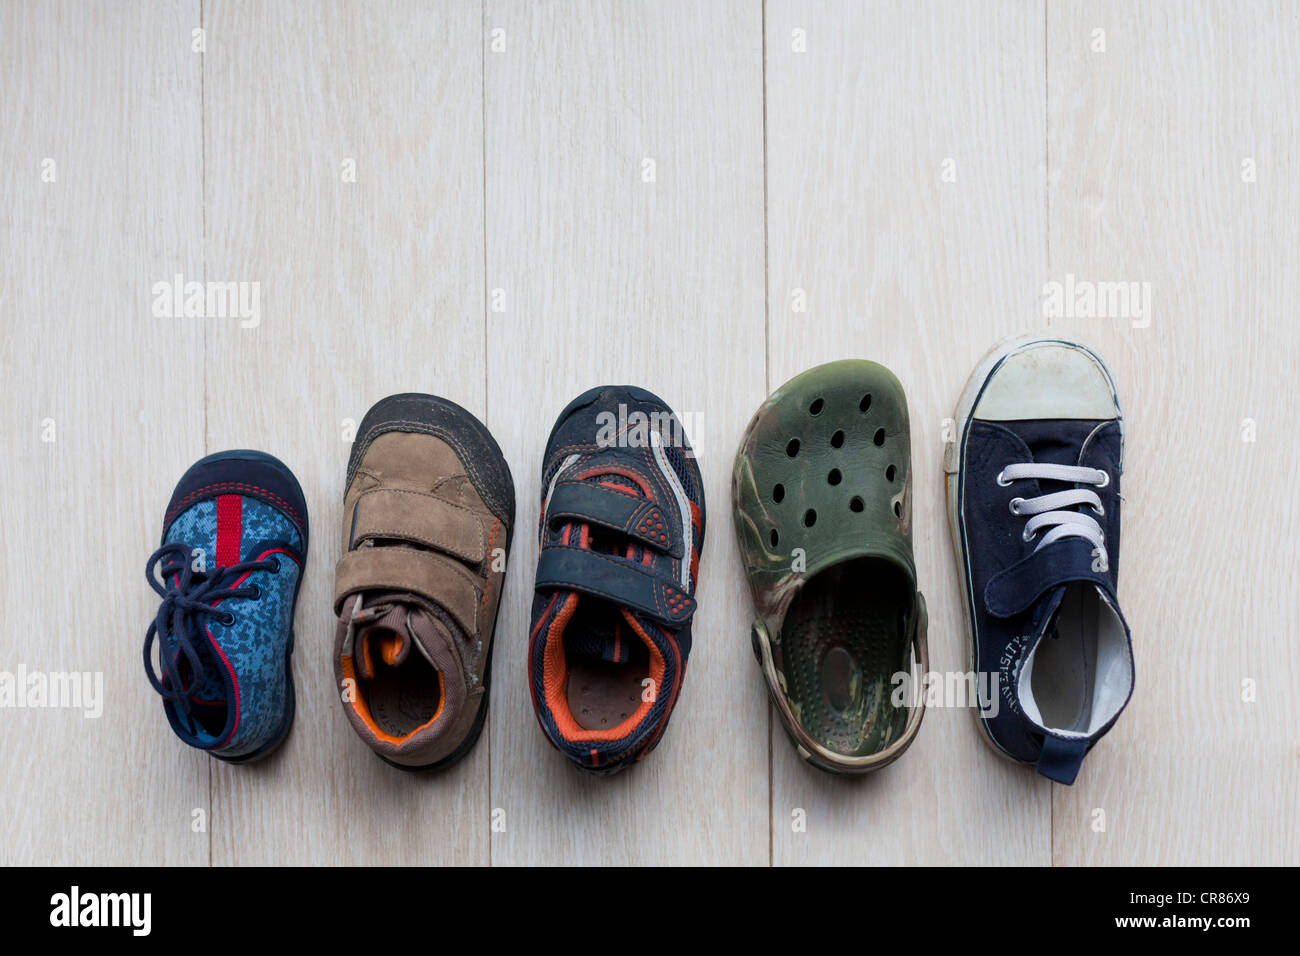 Los zapatos para niños en diversos tamaños de bebé a la edad de kindergarten Foto de stock